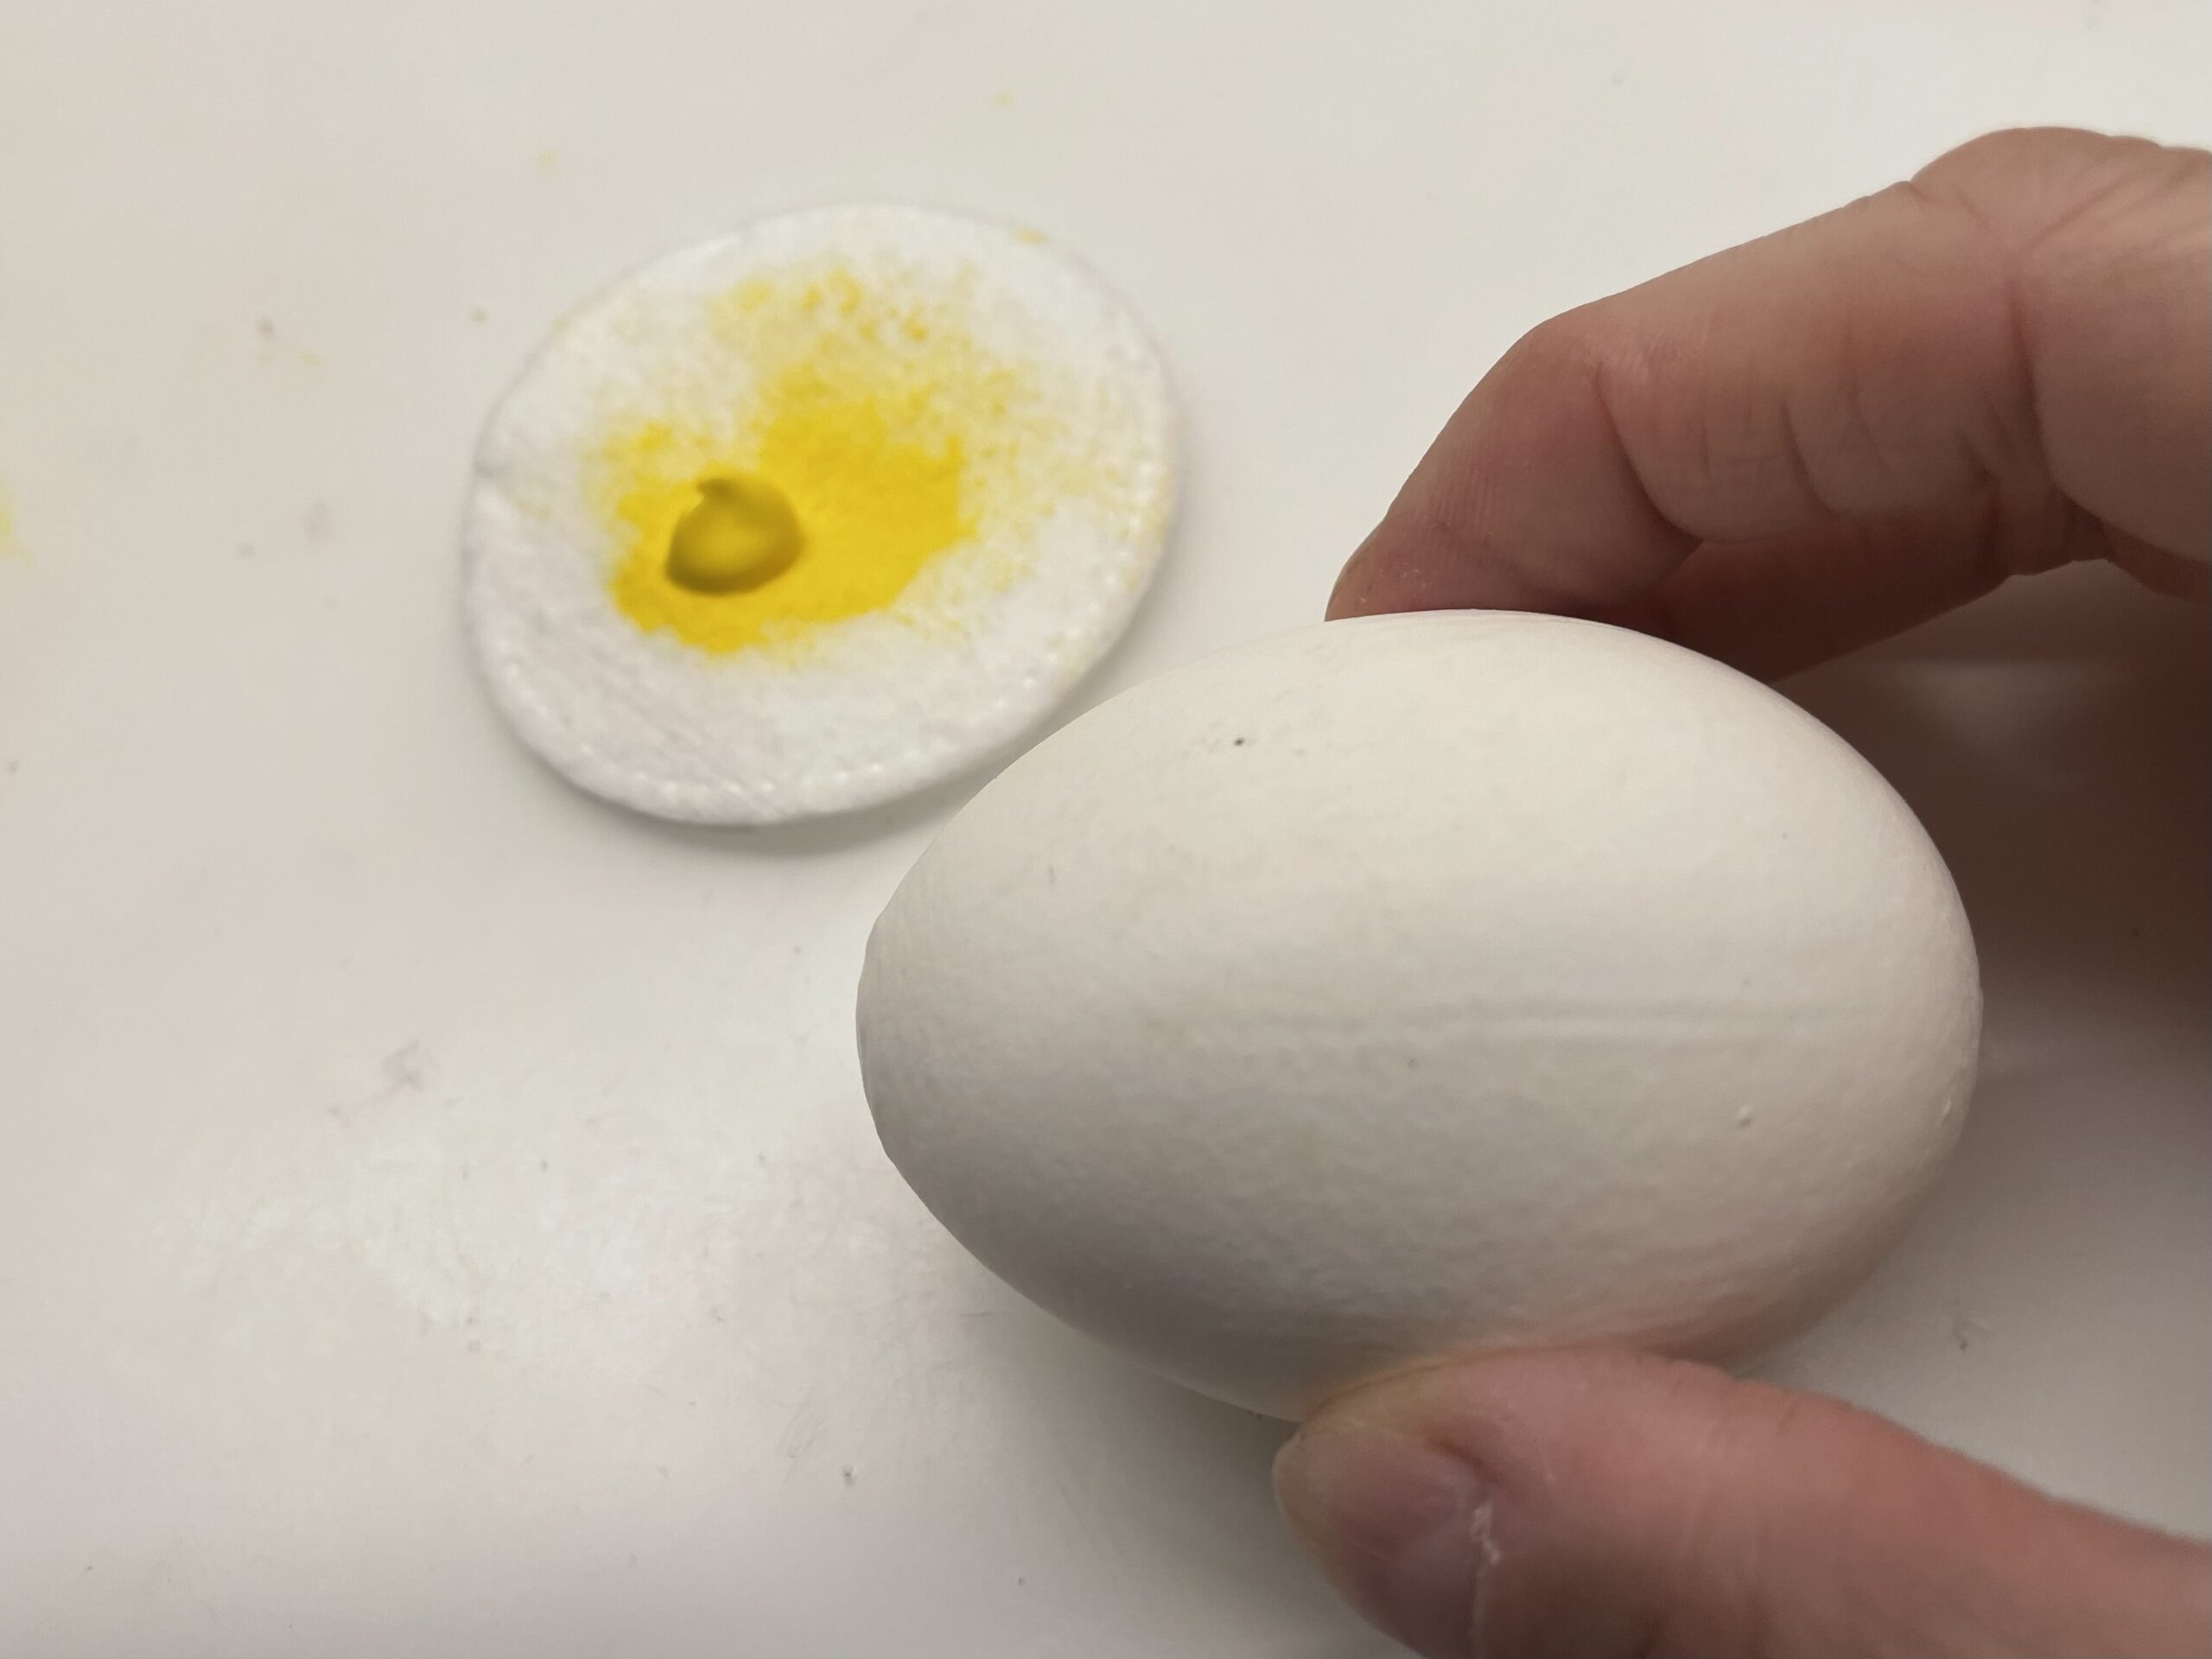 Bild zum Schritt 2 für das Bastel- und DIY-Abenteuer für Kinder: 'Dann malt ihr das Ei gelb an. Verwendet dafür einen...'